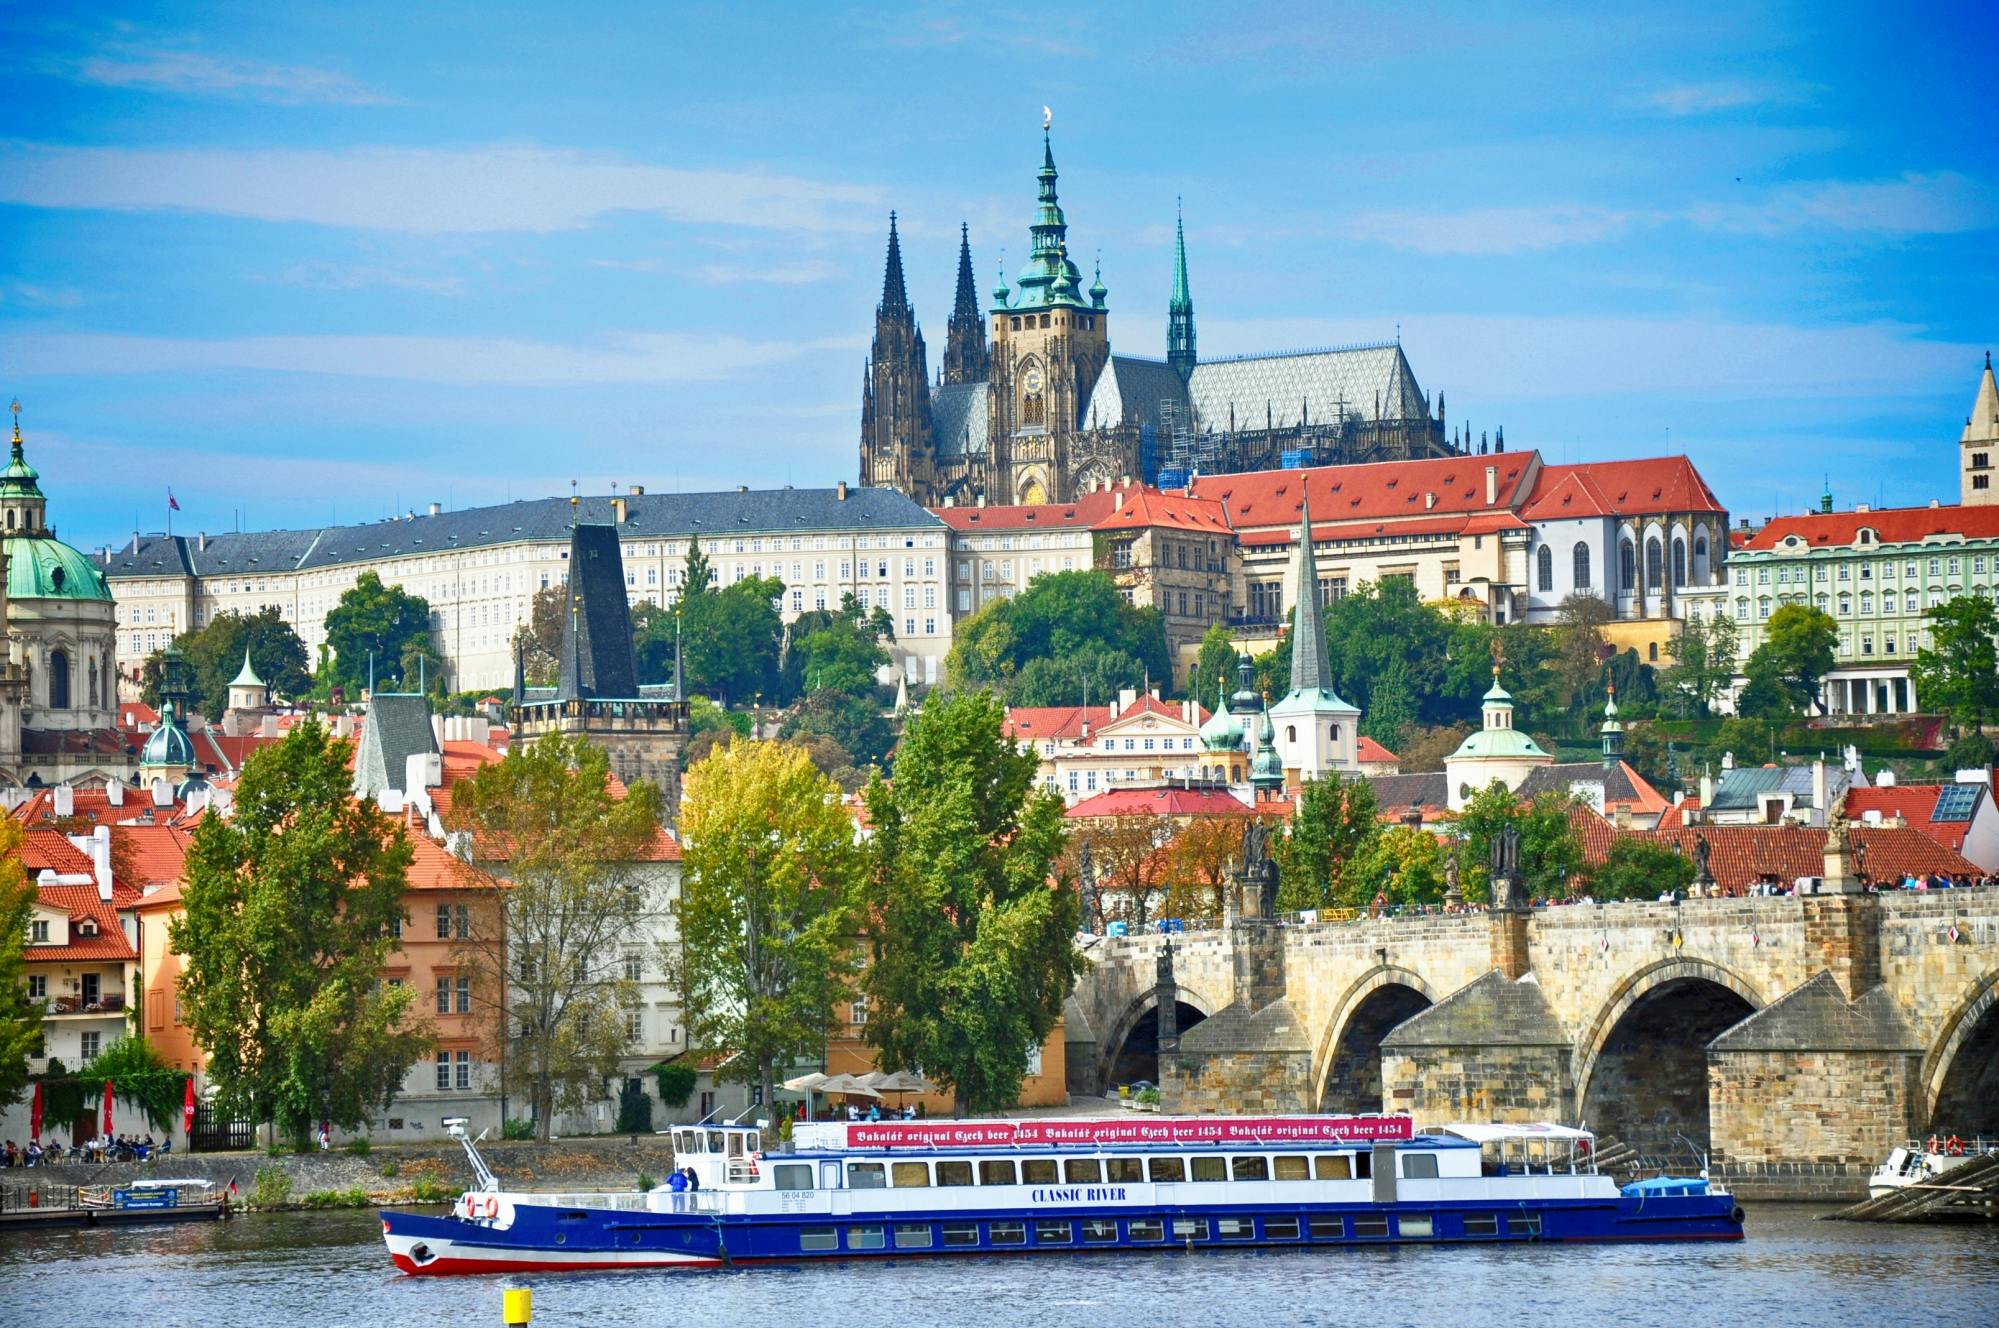 Prag-Kombiticket mit Innenansichten des Schlosses, Stadtrundfahrt und Flusskreuzfahrt